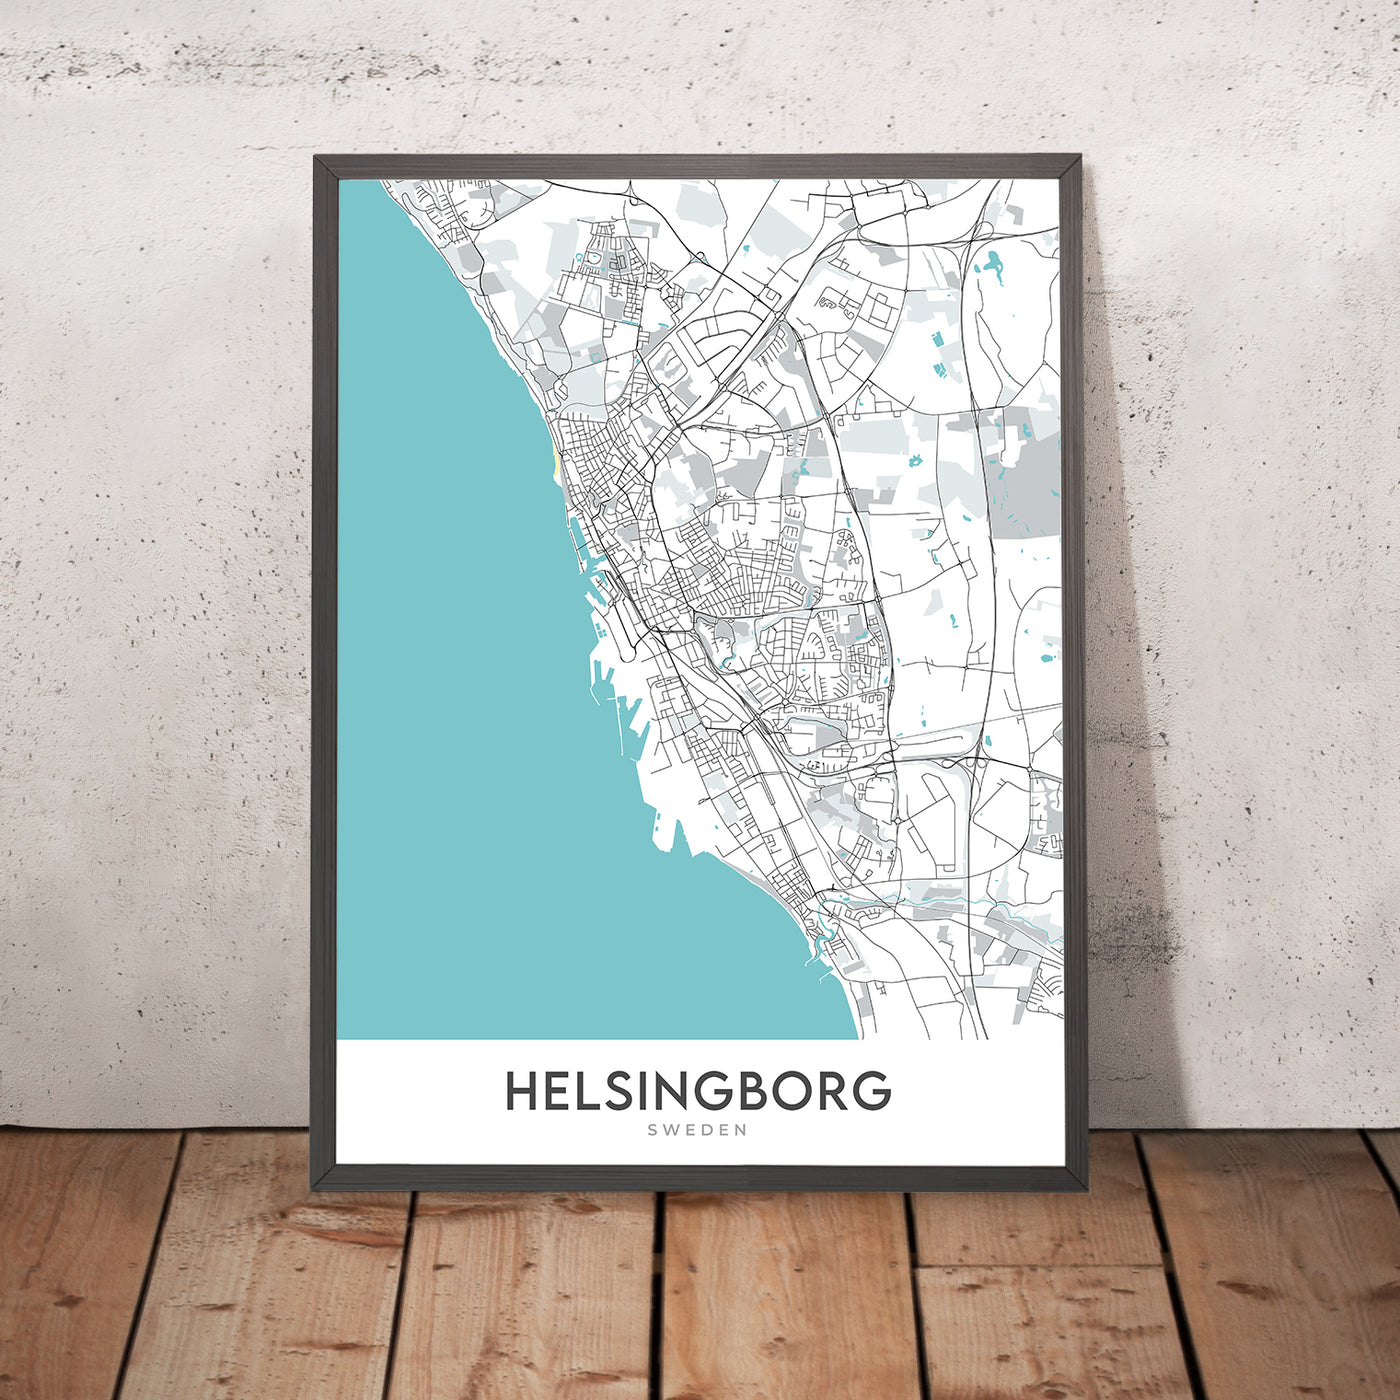 Mapa moderno de la ciudad de Helsingborg, Suecia: Centrum, Ramlösa, Castillo de Helsingborg, Castillo Sofiero, E4